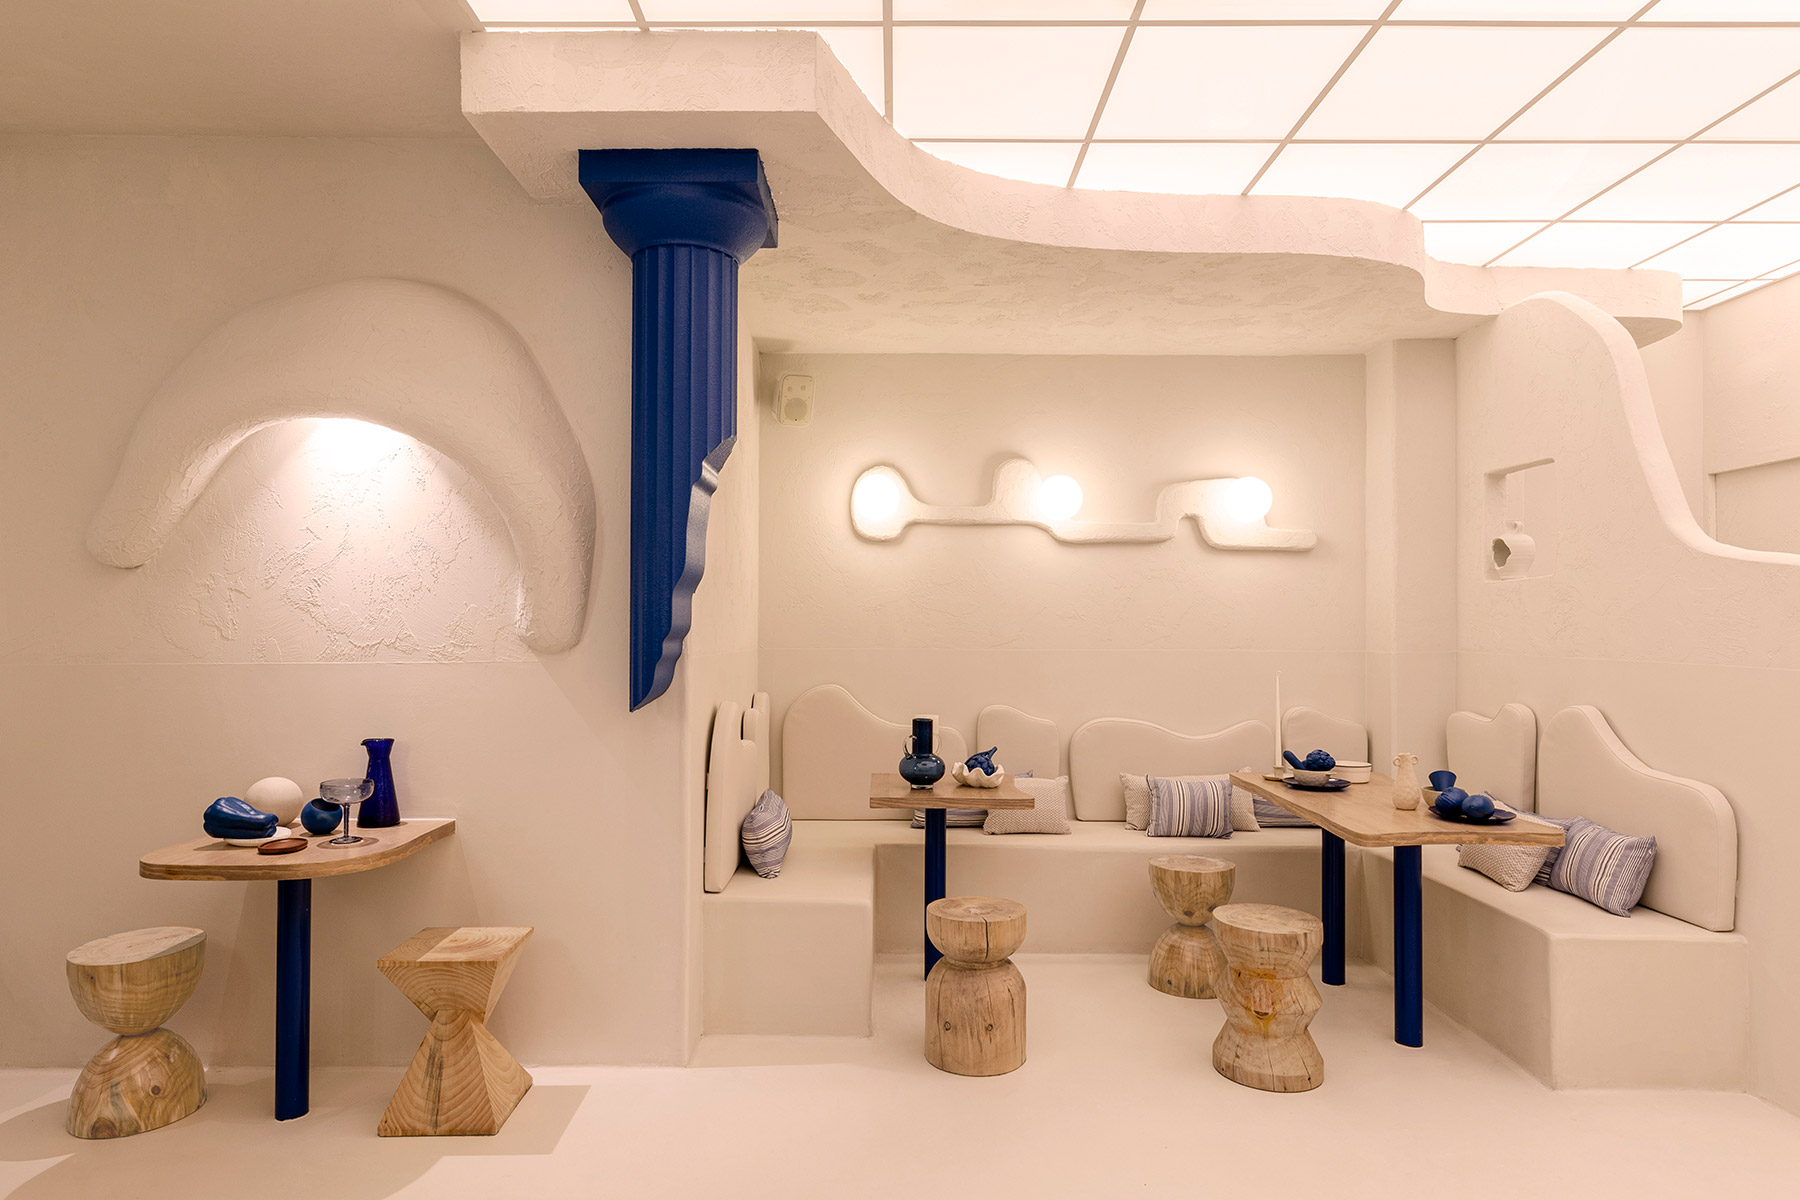 Masquespacio diseña en Valencia el restaurante griego Egeo, incorporando tradición y tecnología